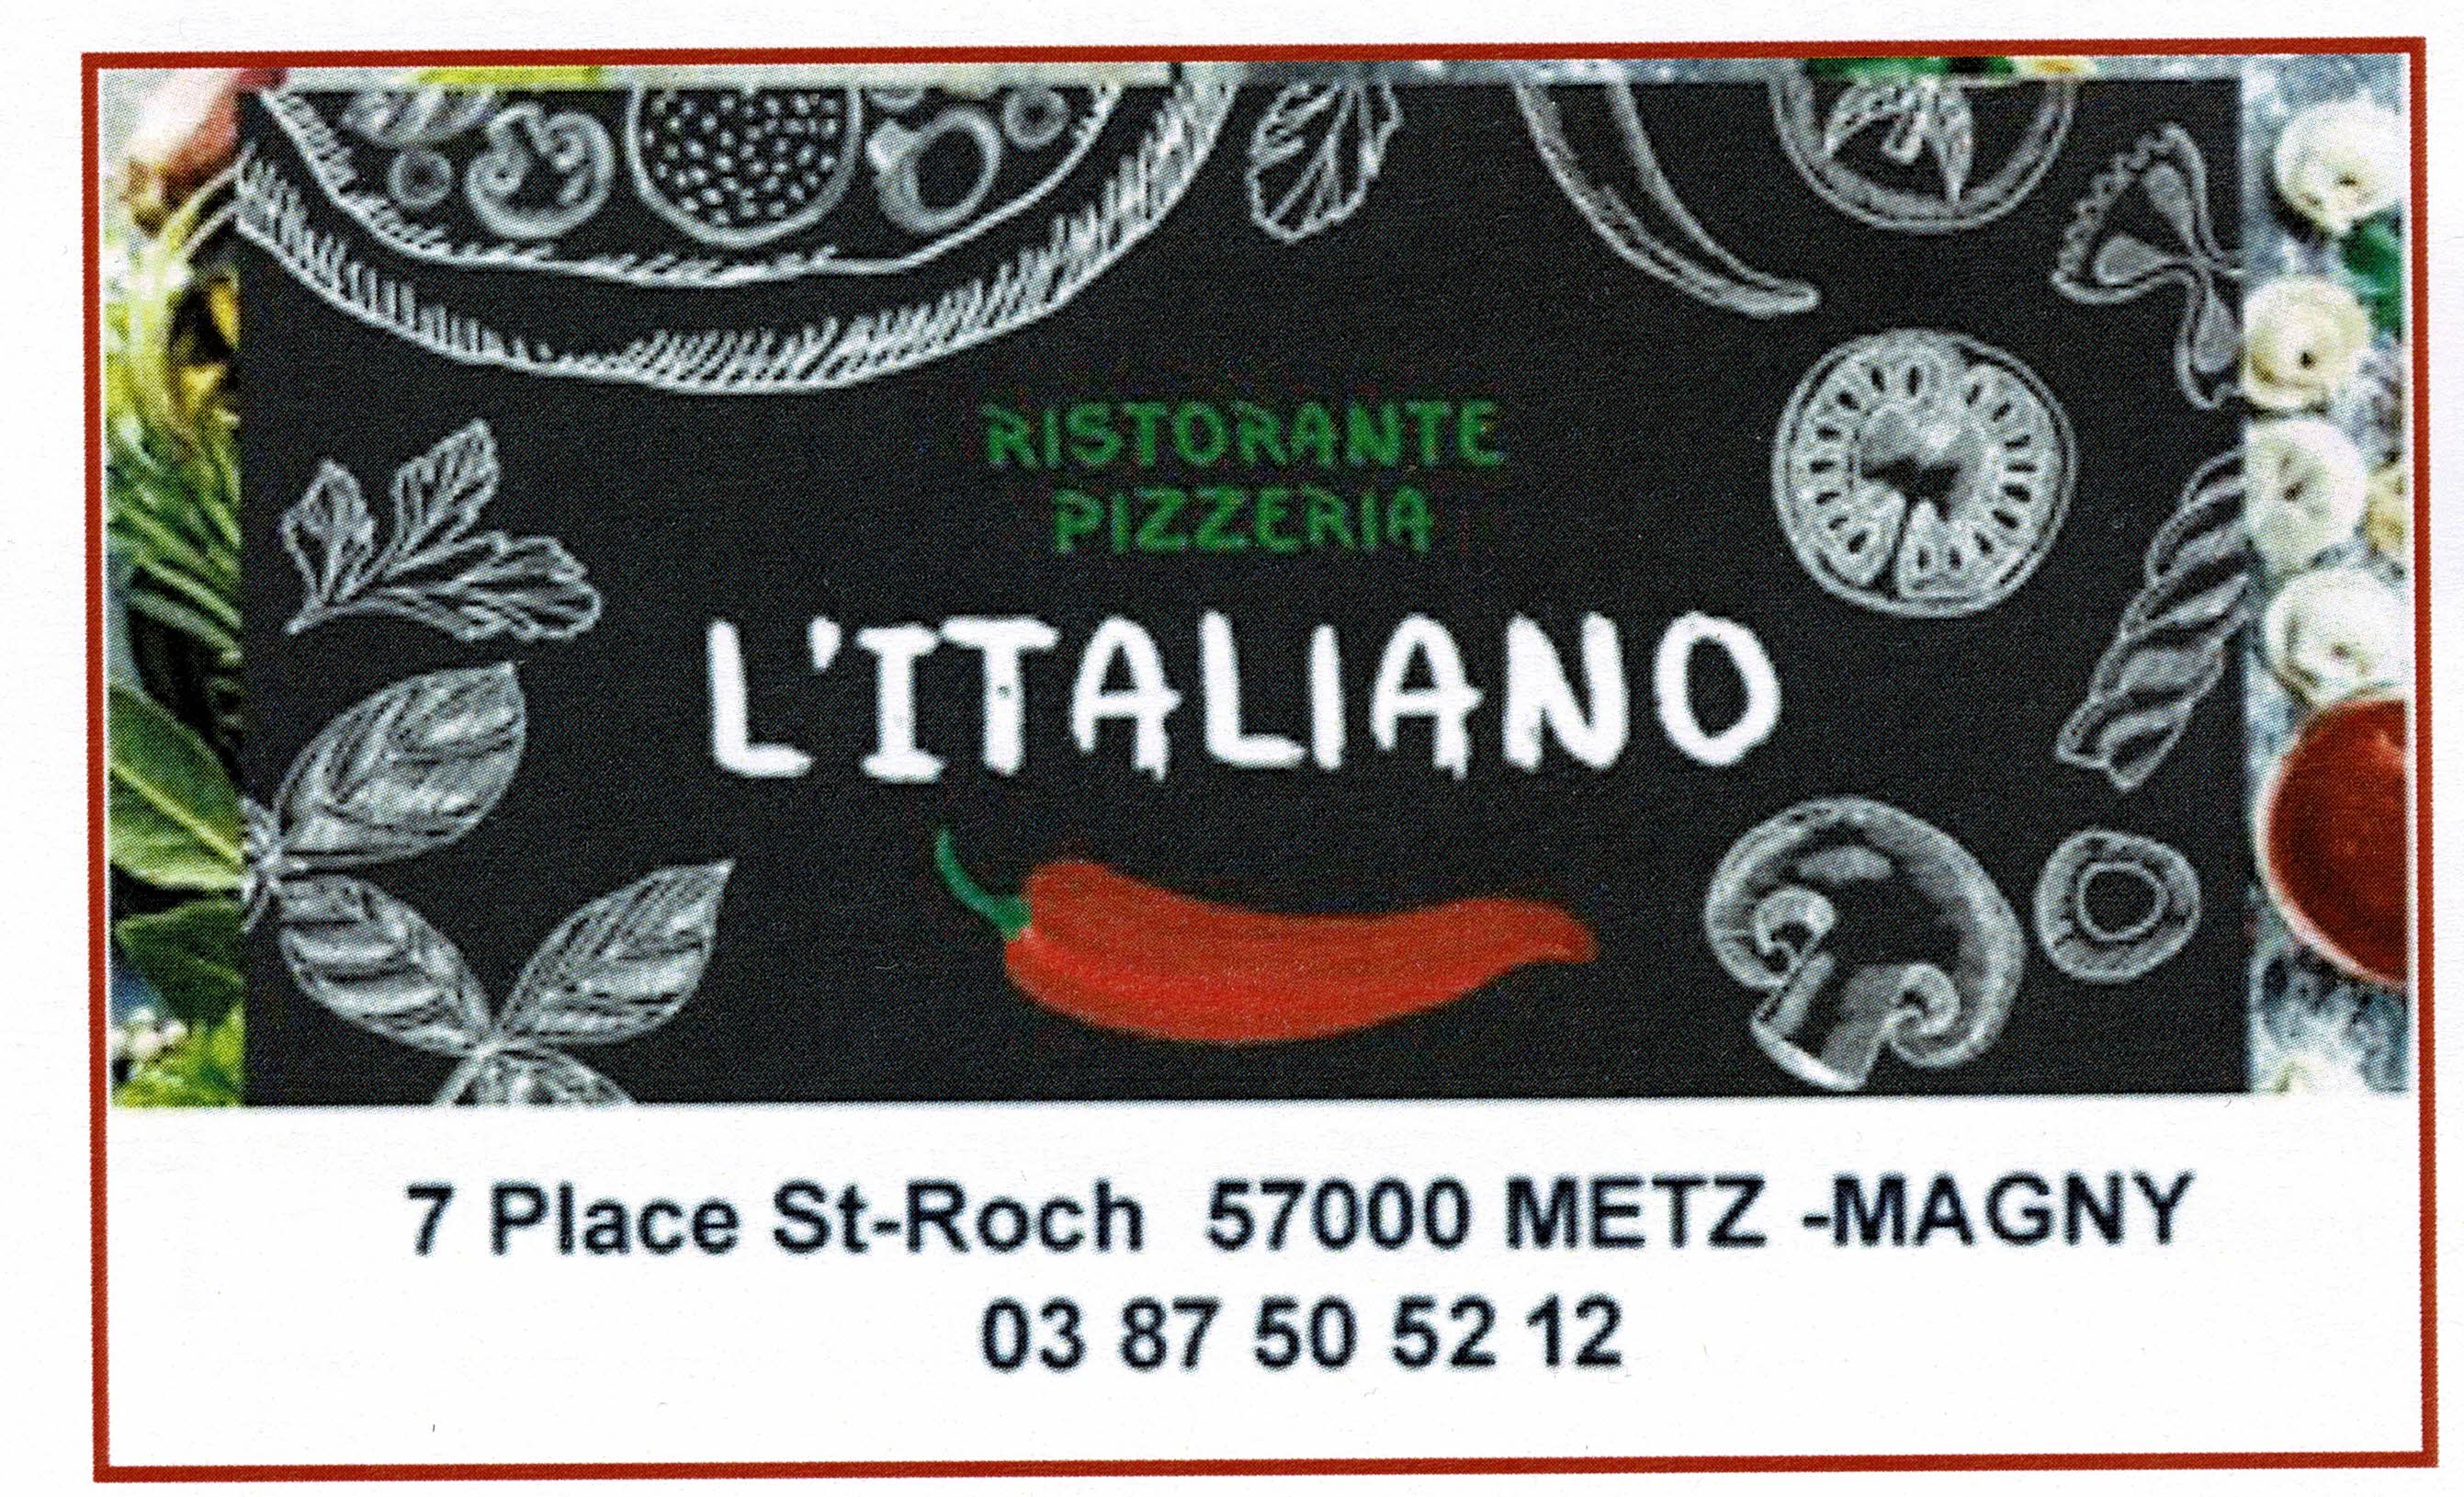 Restaurant Pizerria L'Italiano